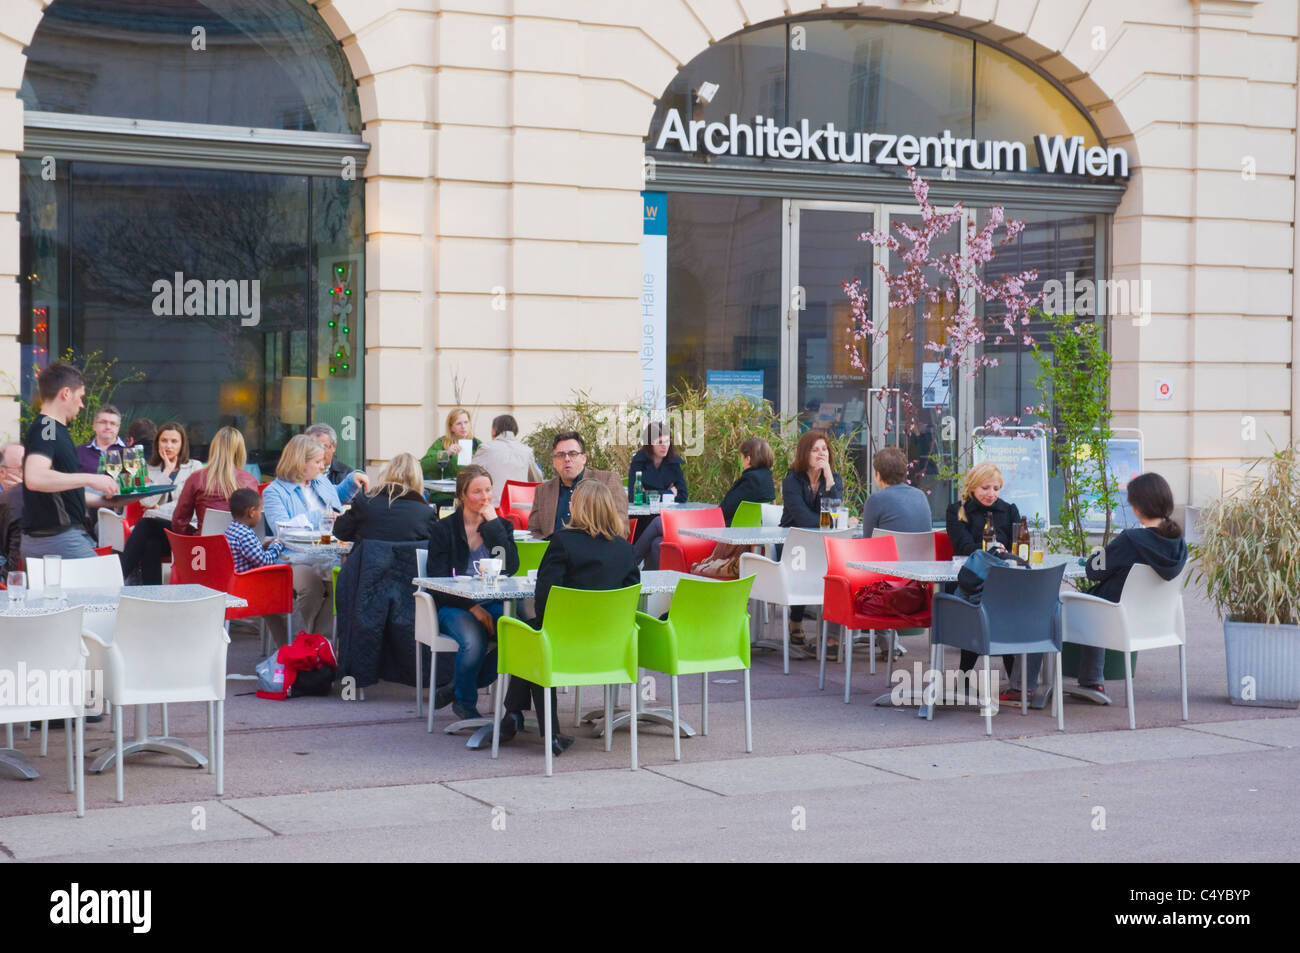 Cafe à l'extérieur musée Architekturzentrum dans le quartier des musées MuseumsQuartier de Vienne Autriche Europe centrale centrale Banque D'Images